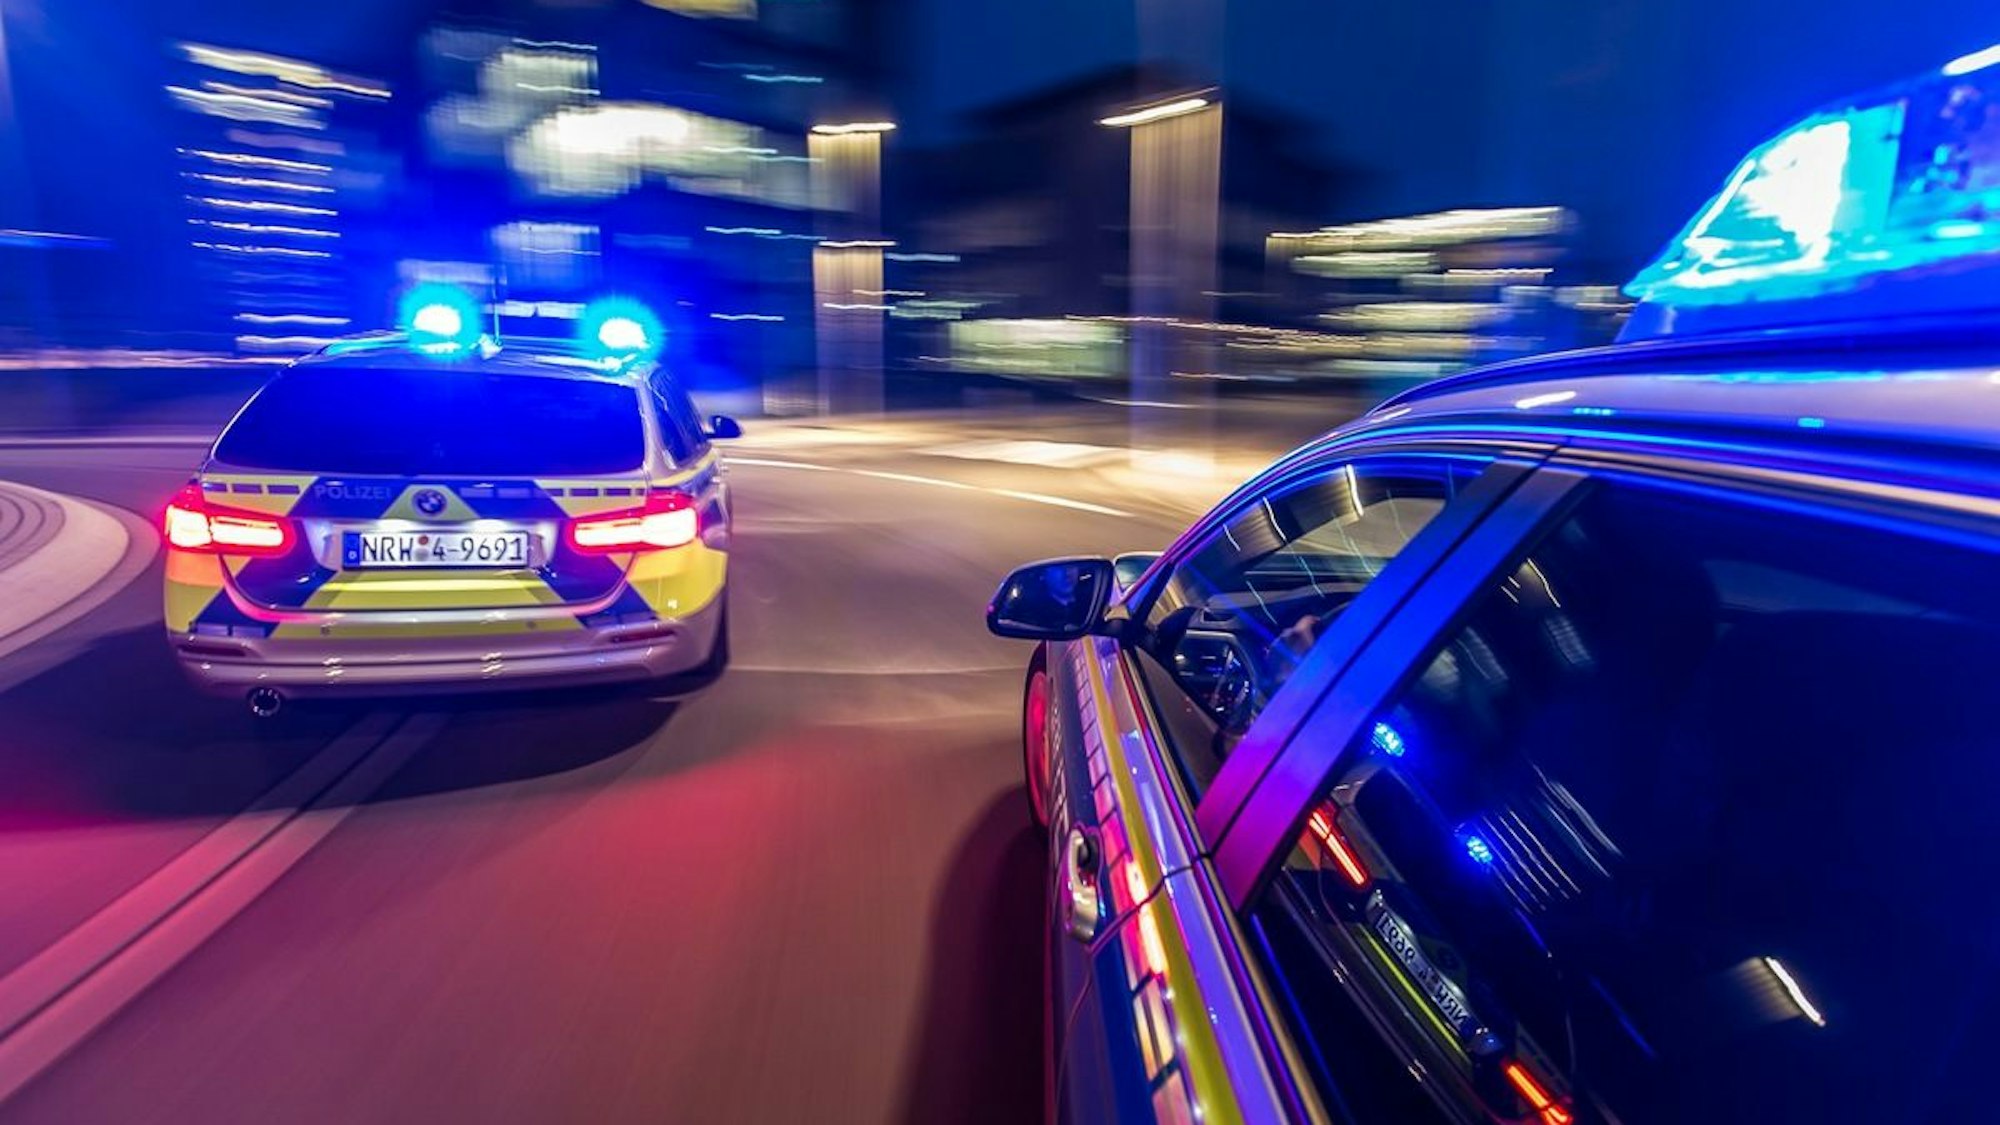 Zwei Polizeiwagen rasen mit Blaulicht durch die Nacht.